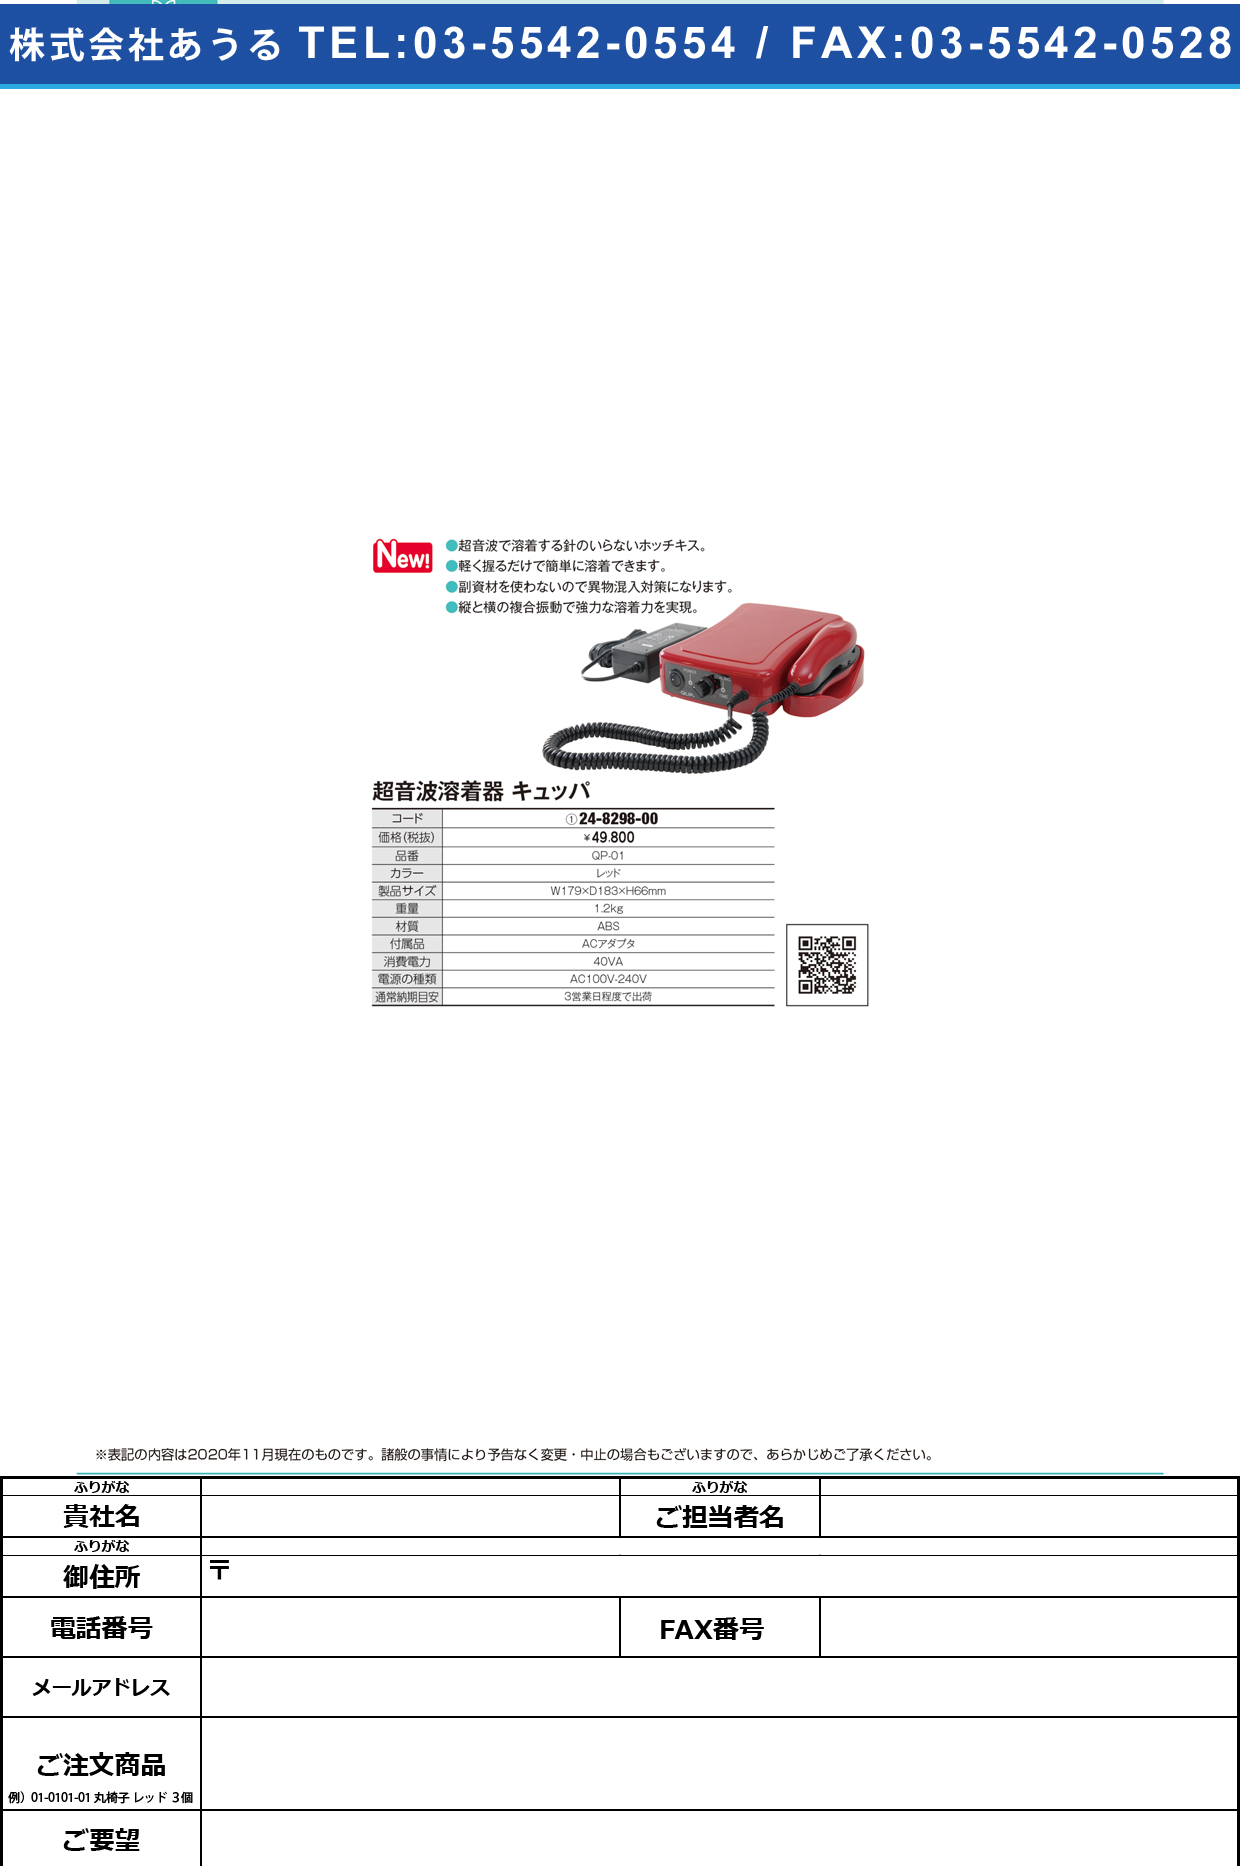 キュッパ(超音波ホッチキス) QP-01QP-01(24-8298-00)【朝日産業】(販売単位:1)